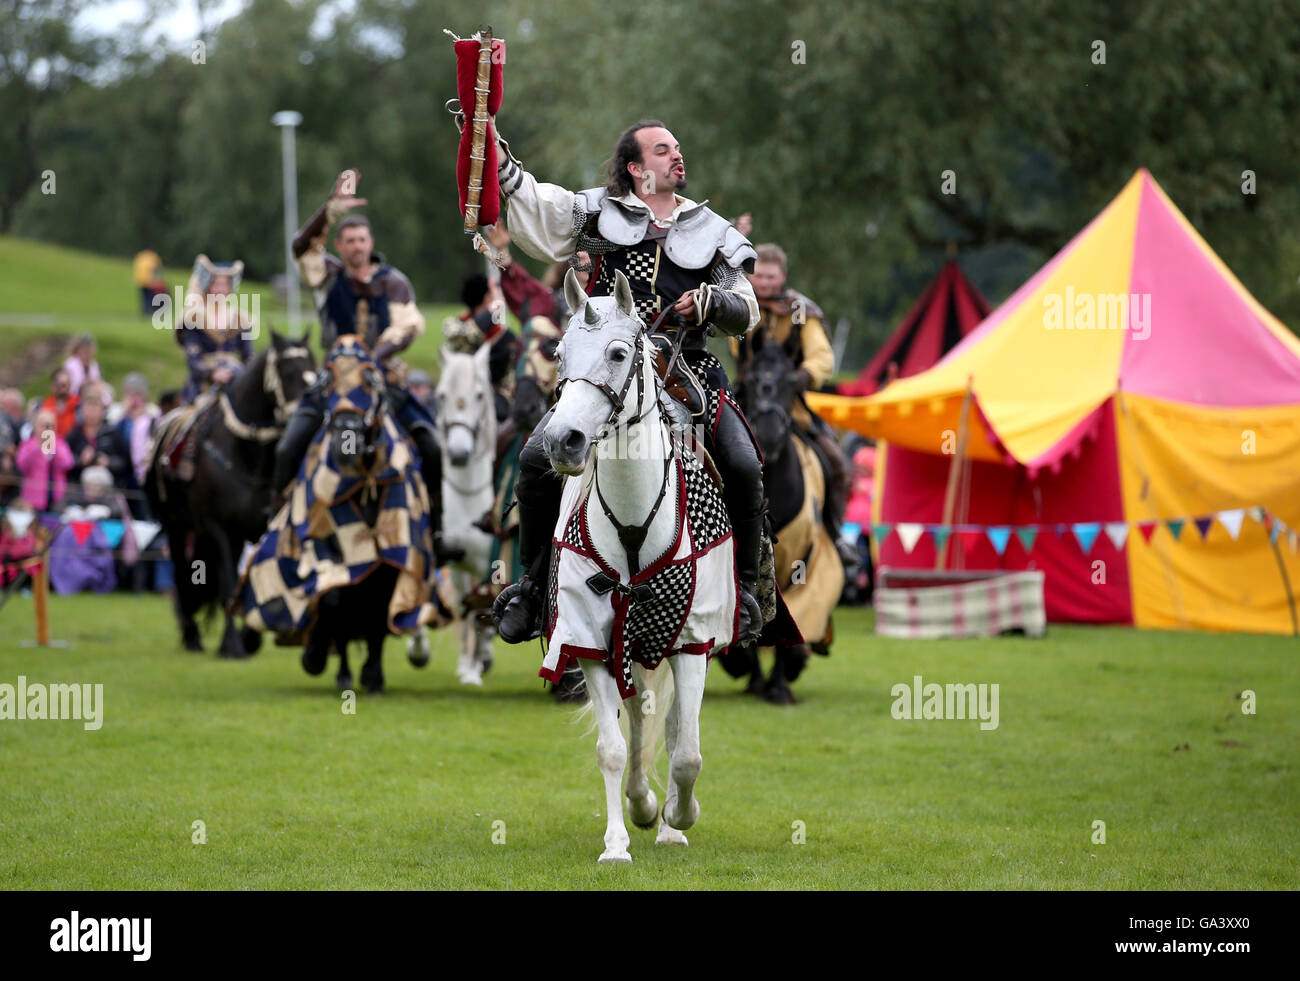 Les membres de la famille d'Onno, une histoire vivante de la scène stunt groupe, participer à un tournoi de joutes médiévales annuel au Palais de Linlithgow, West Lothian, Scotland. Banque D'Images